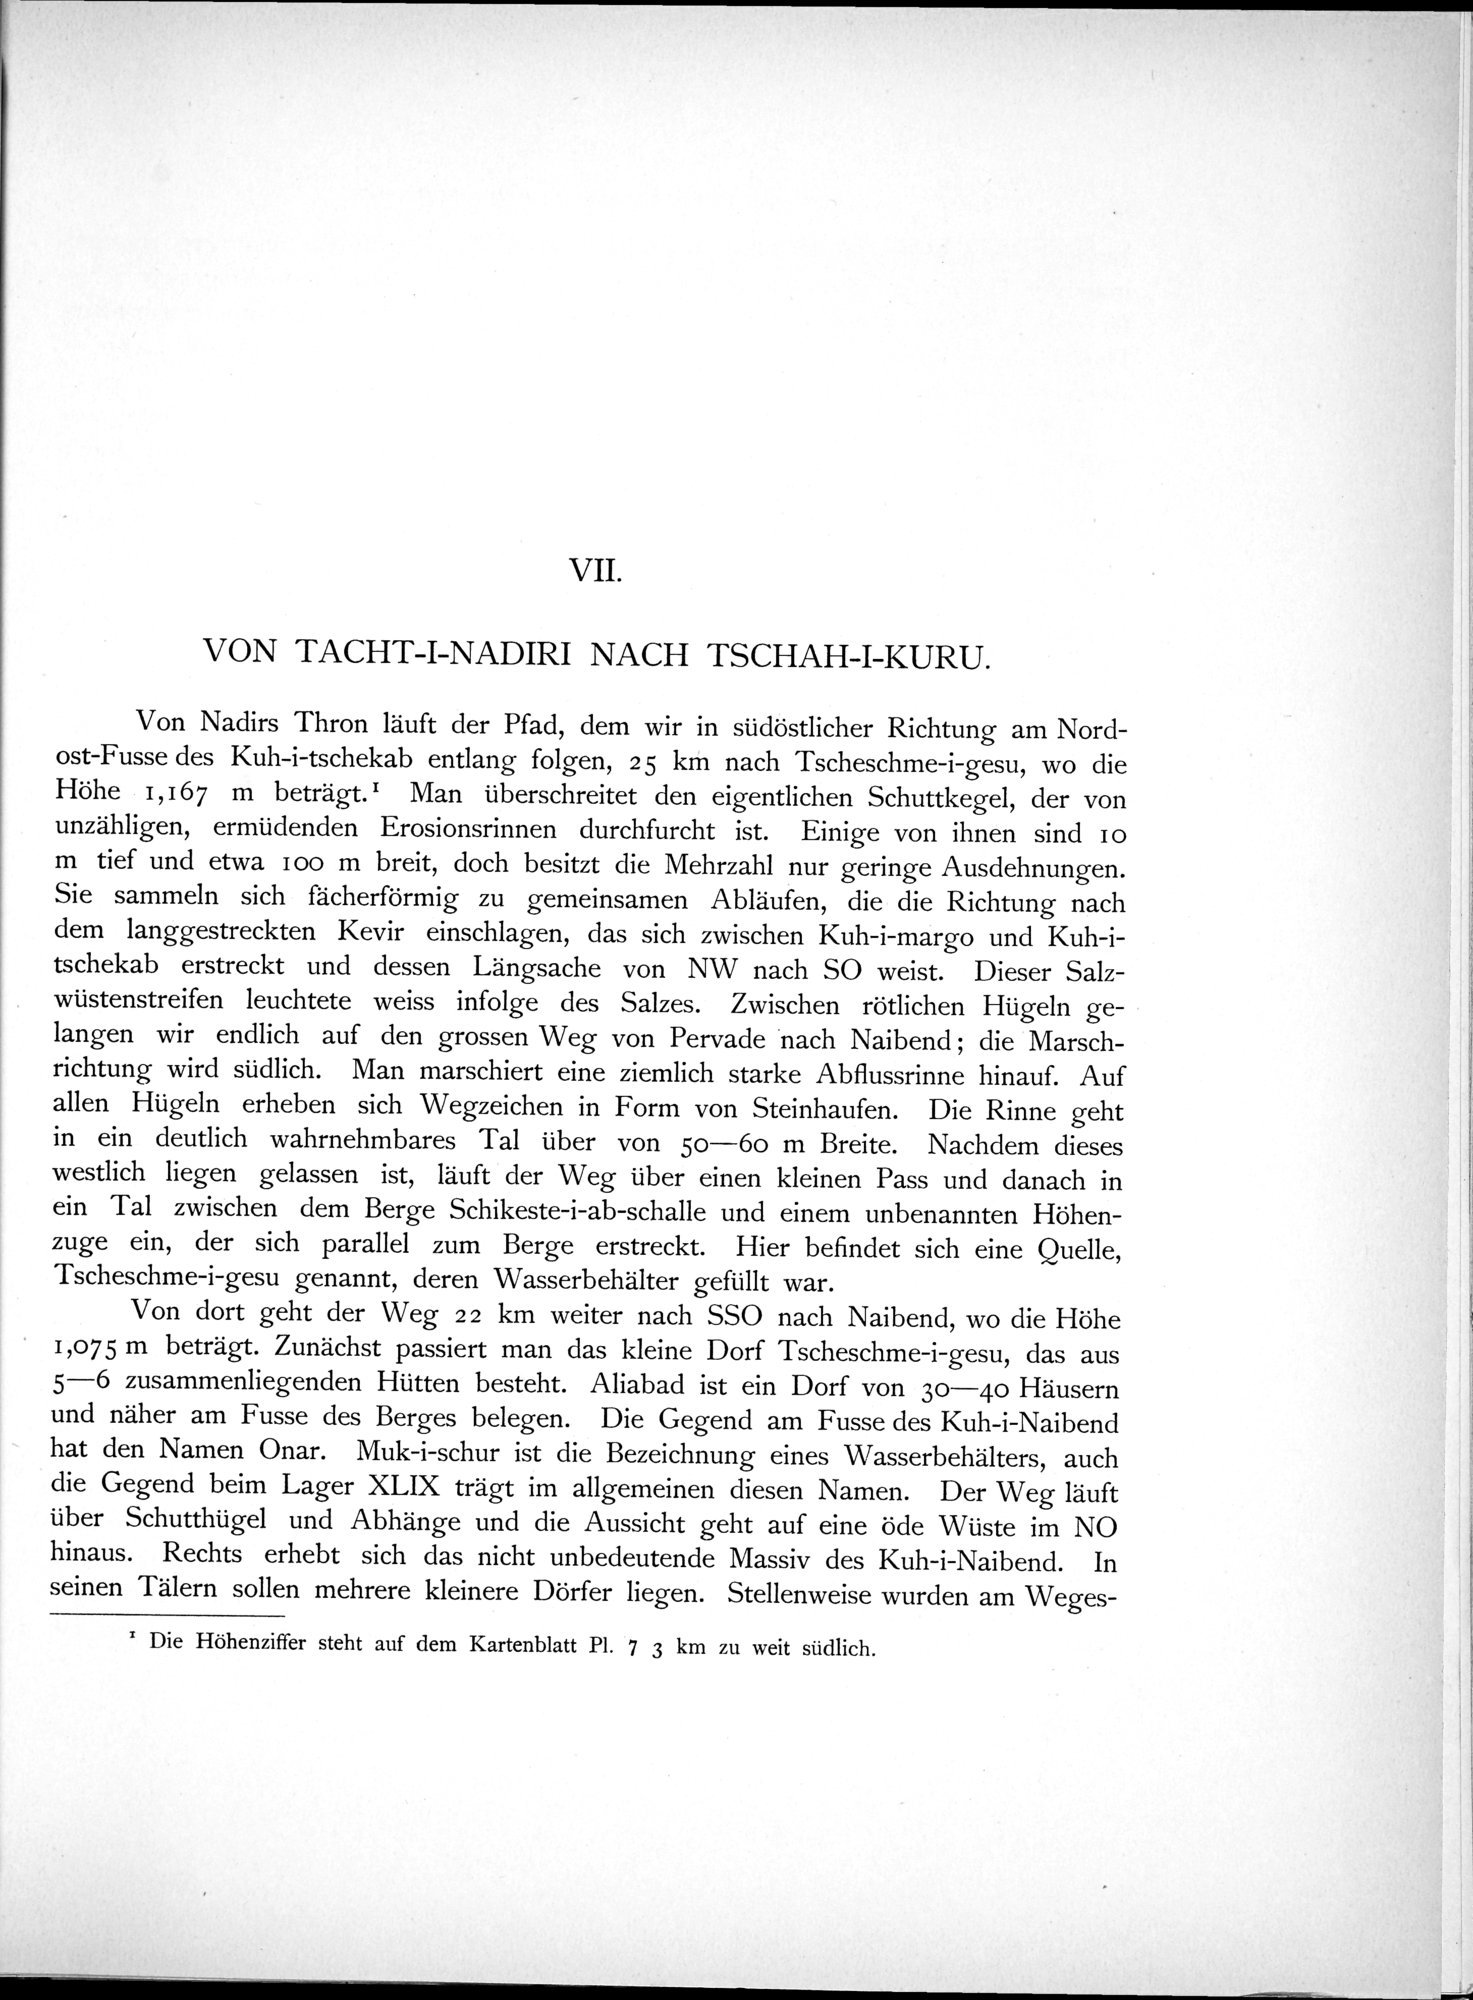 Eine Routenaufnahme durch Ostpersien : vol.1 / Page 187 (Grayscale High Resolution Image)